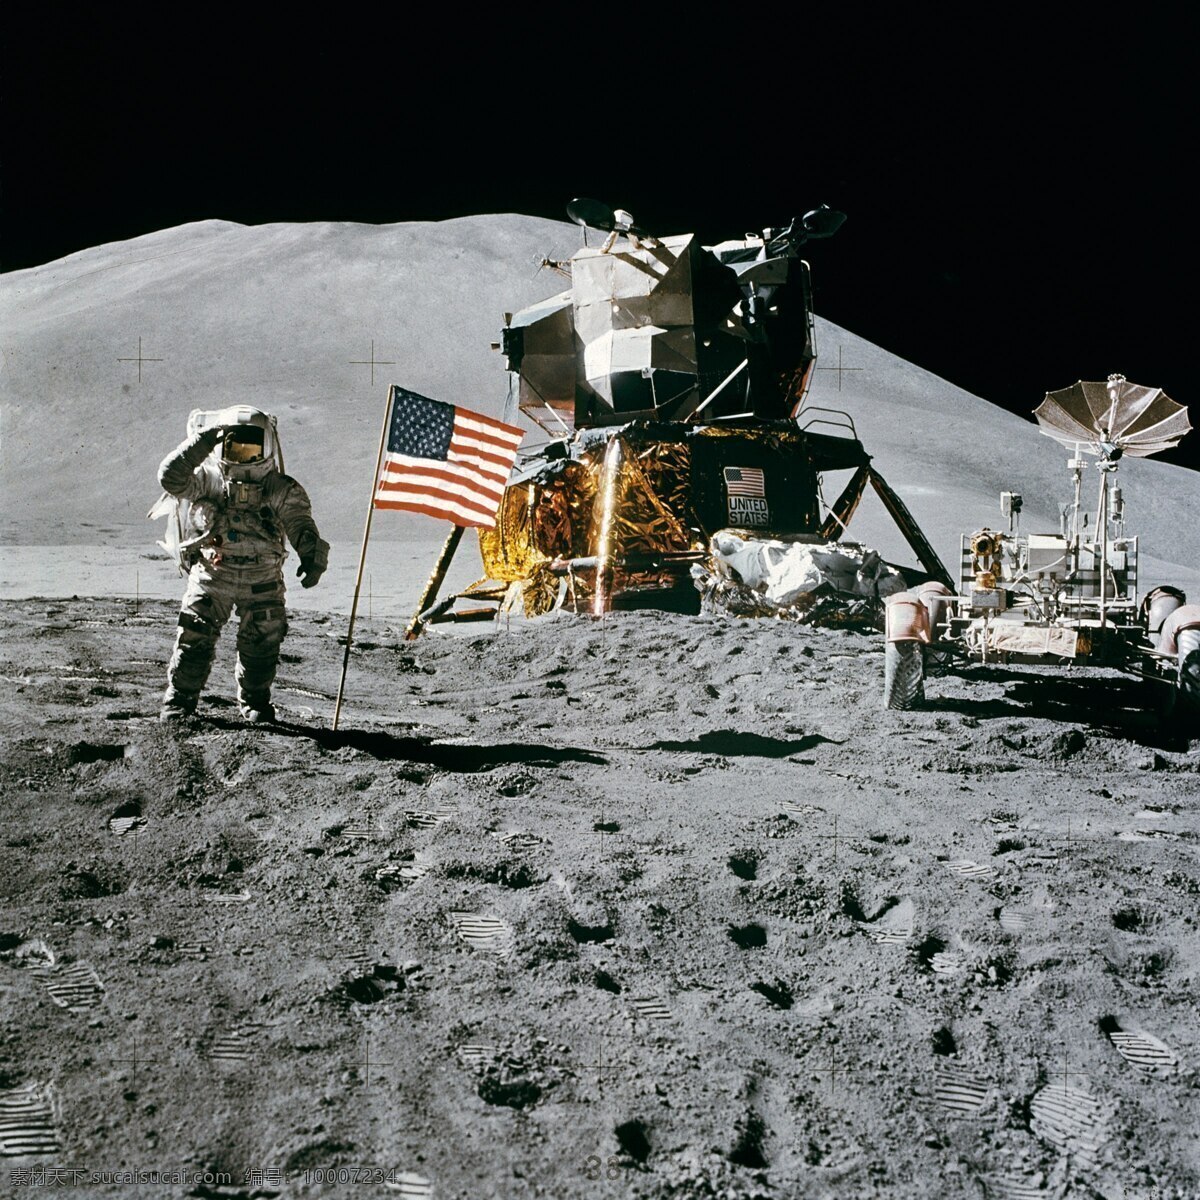 阿波罗登月 空间站 登月 阿波罗 詹姆斯 欧文 农历 月球 现代科技 科学研究